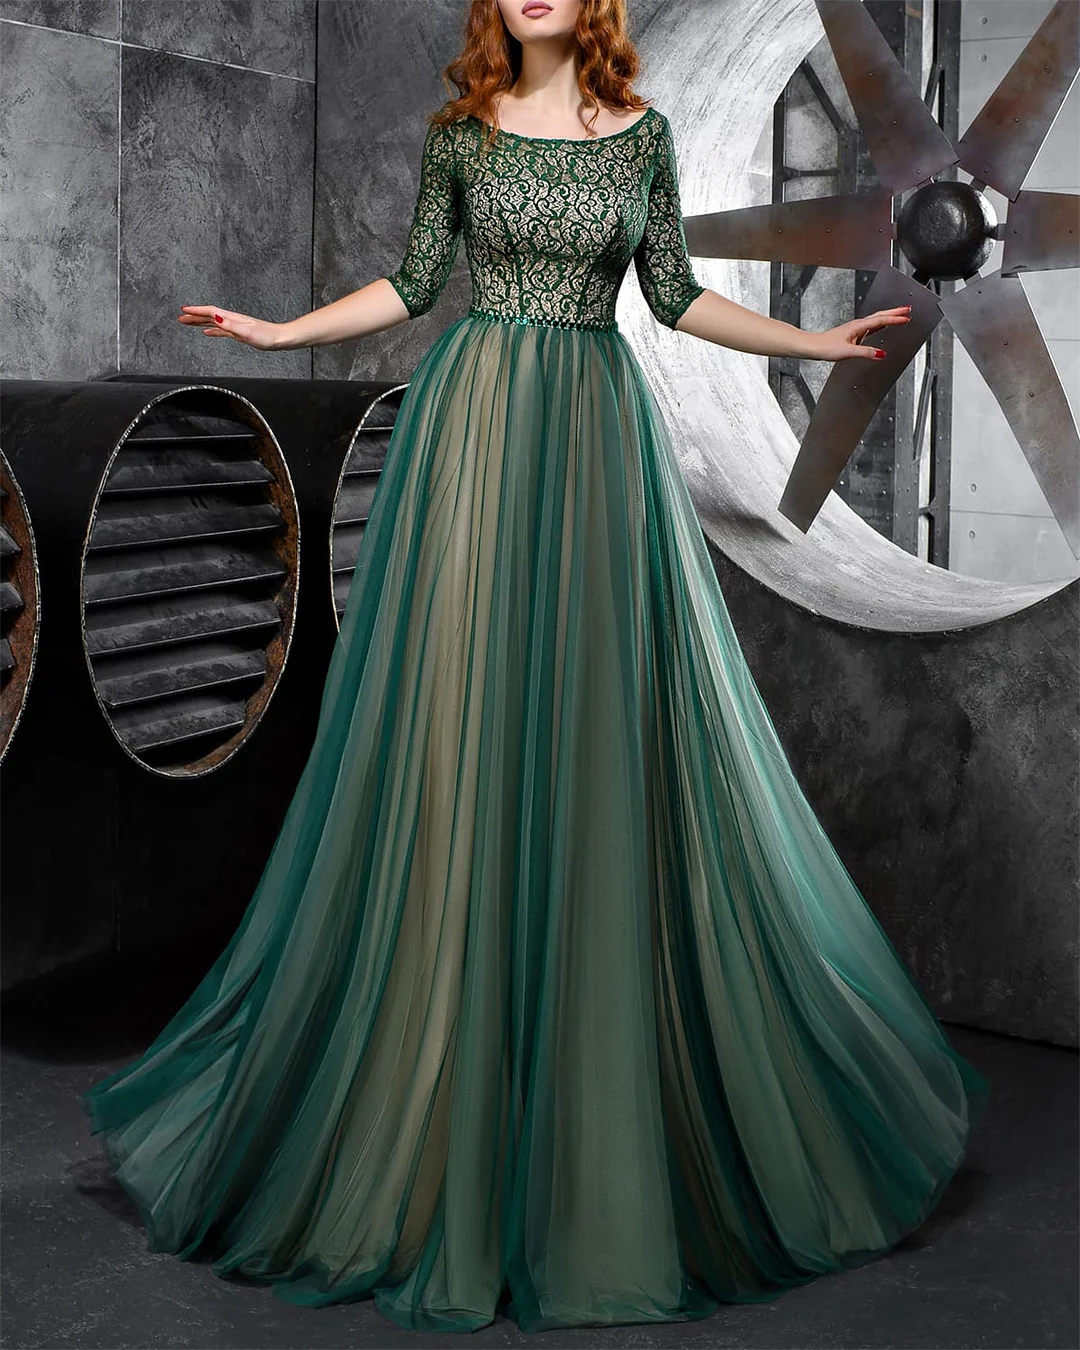 Women's Green Lace Mesh Dress